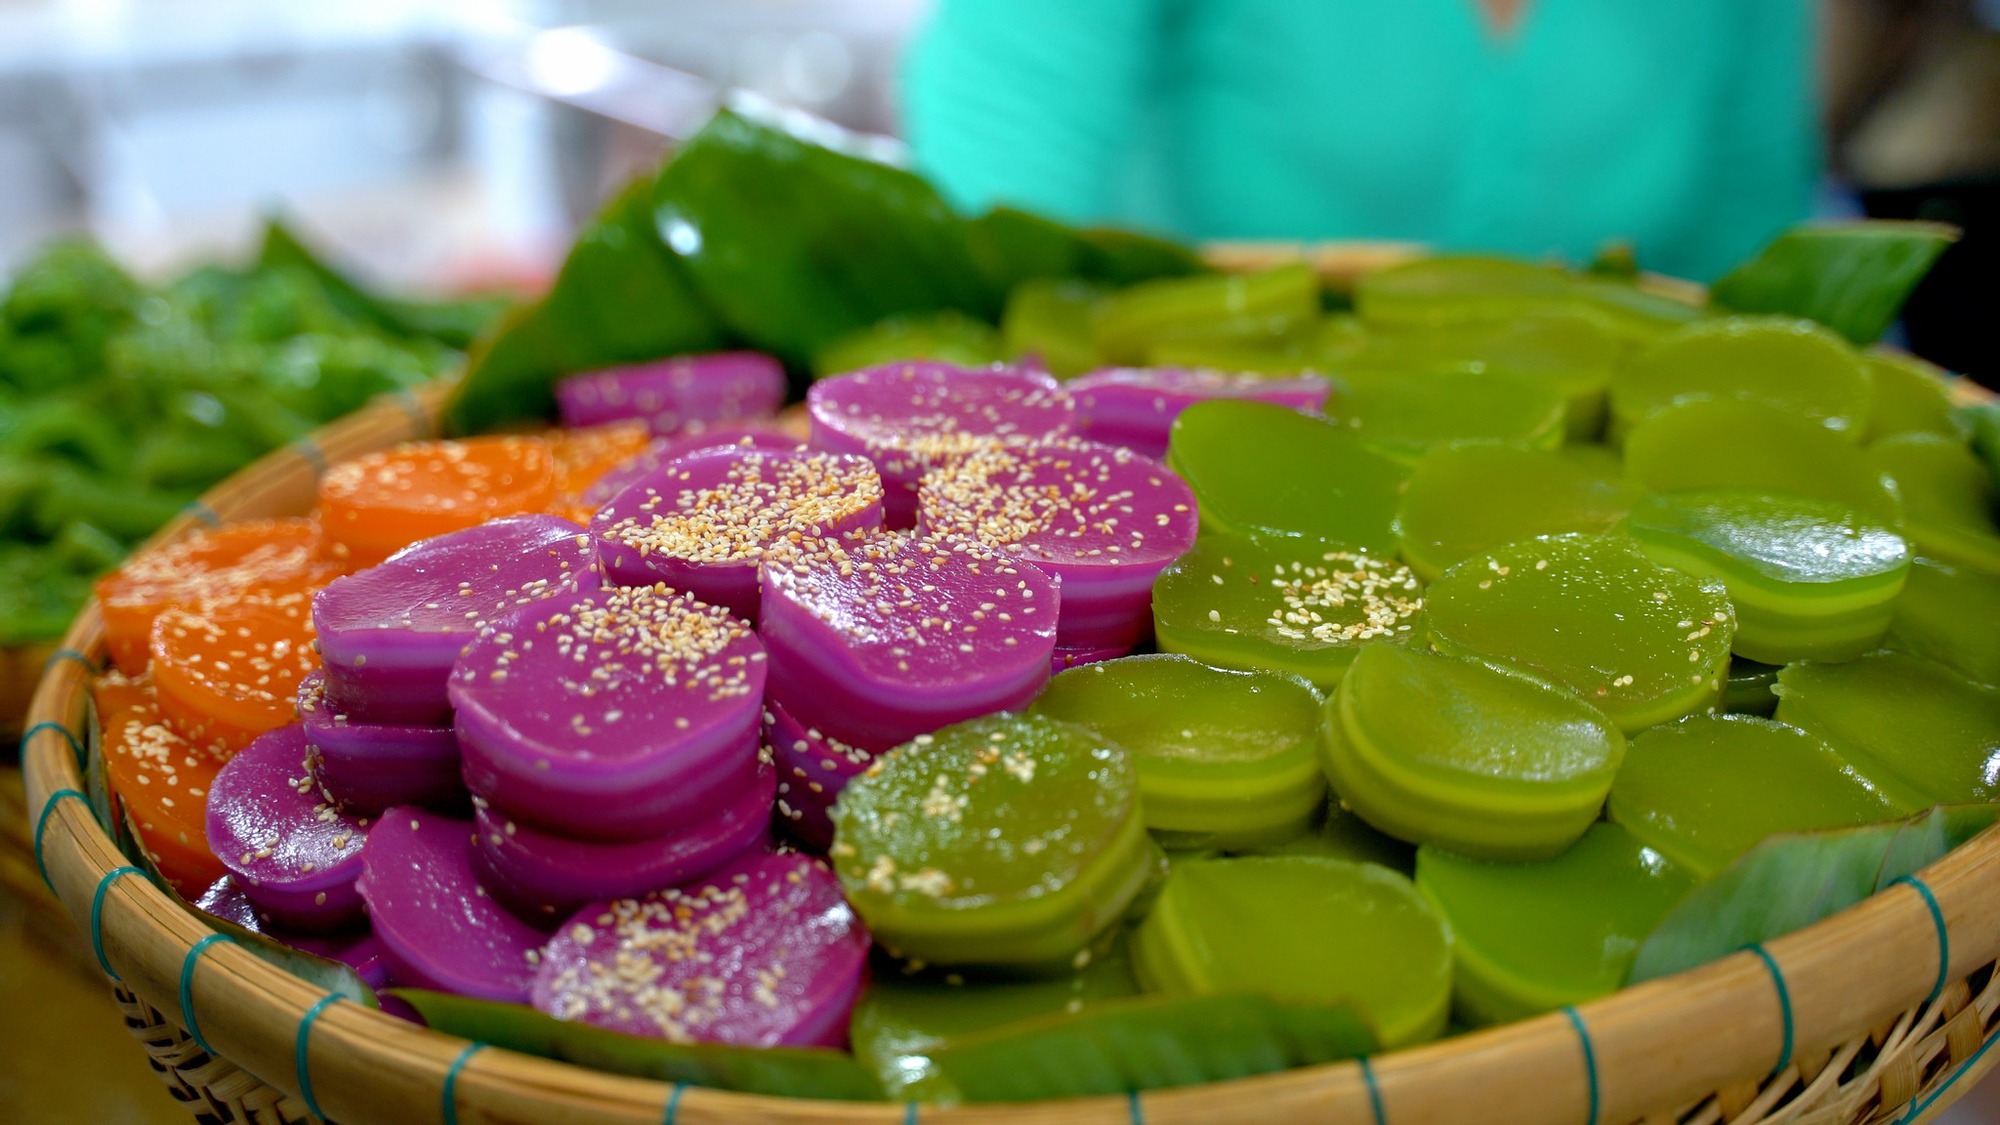 Đã mắt với hàng chục loại bánh đặc trưng miền Tây tại lễ hội bánh dân gian Nam bộ - Ảnh 6.